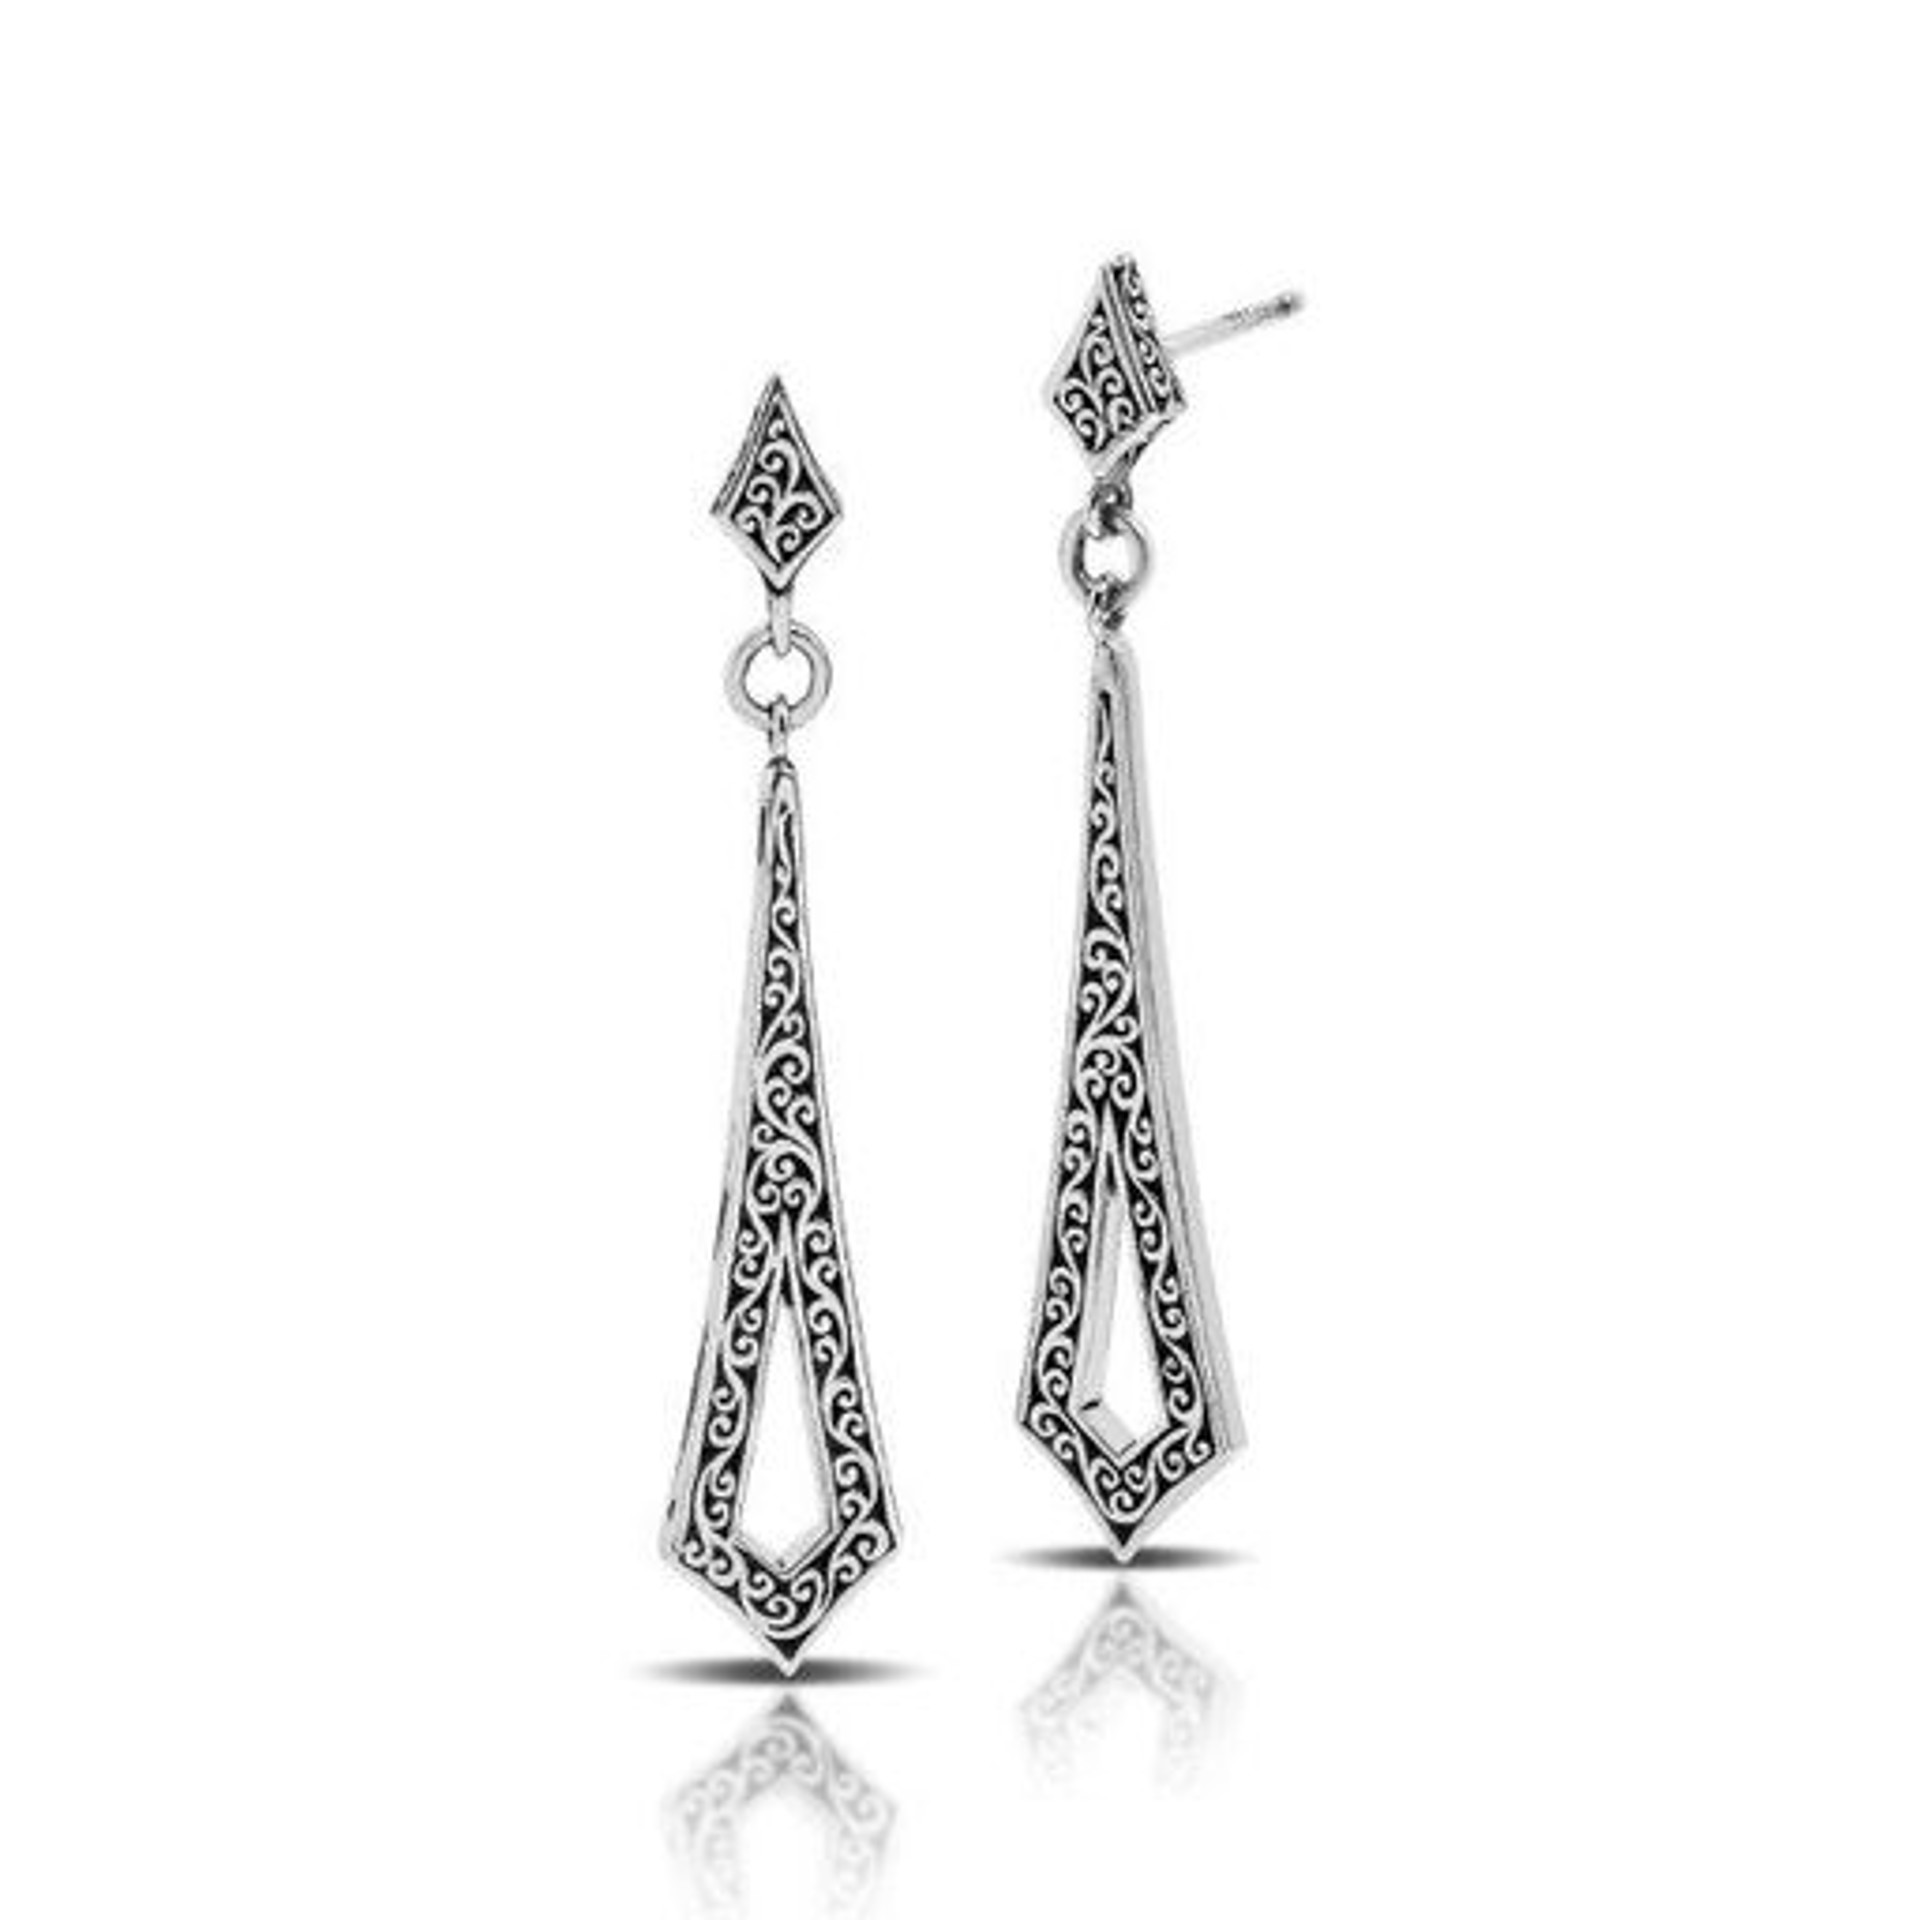 6971 Sterling Silver Earrings by Lois Hill